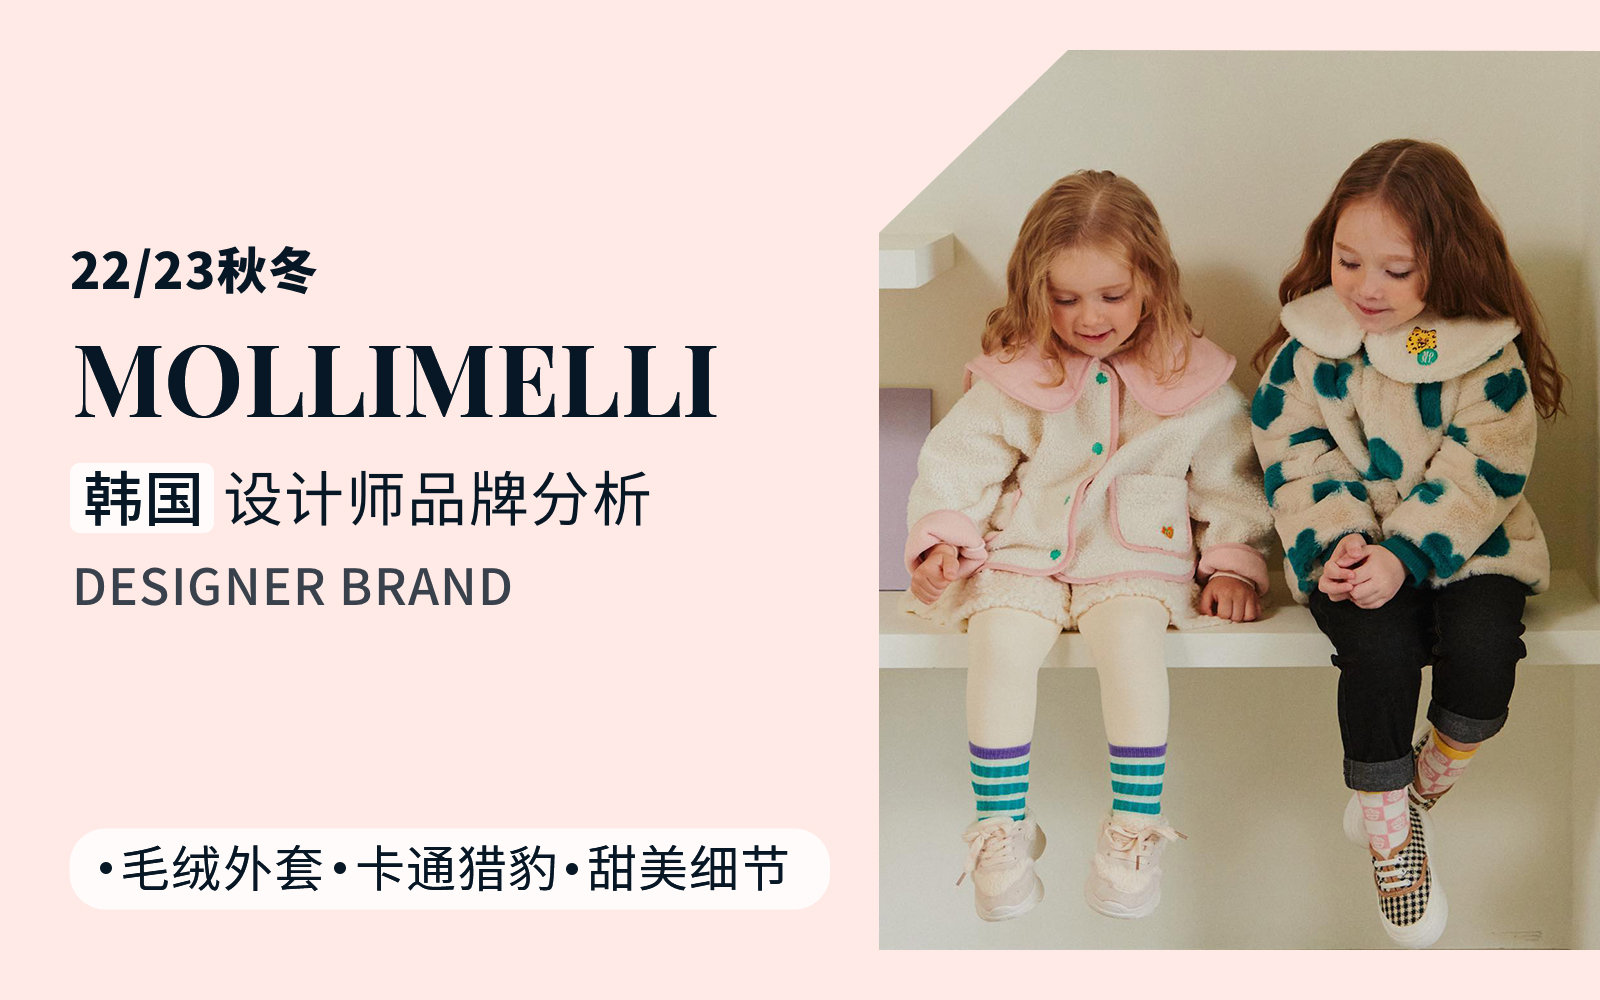 Sweet Korean Fashion -- The Analysis of MOLLIMELLI The Korean Designer Brand